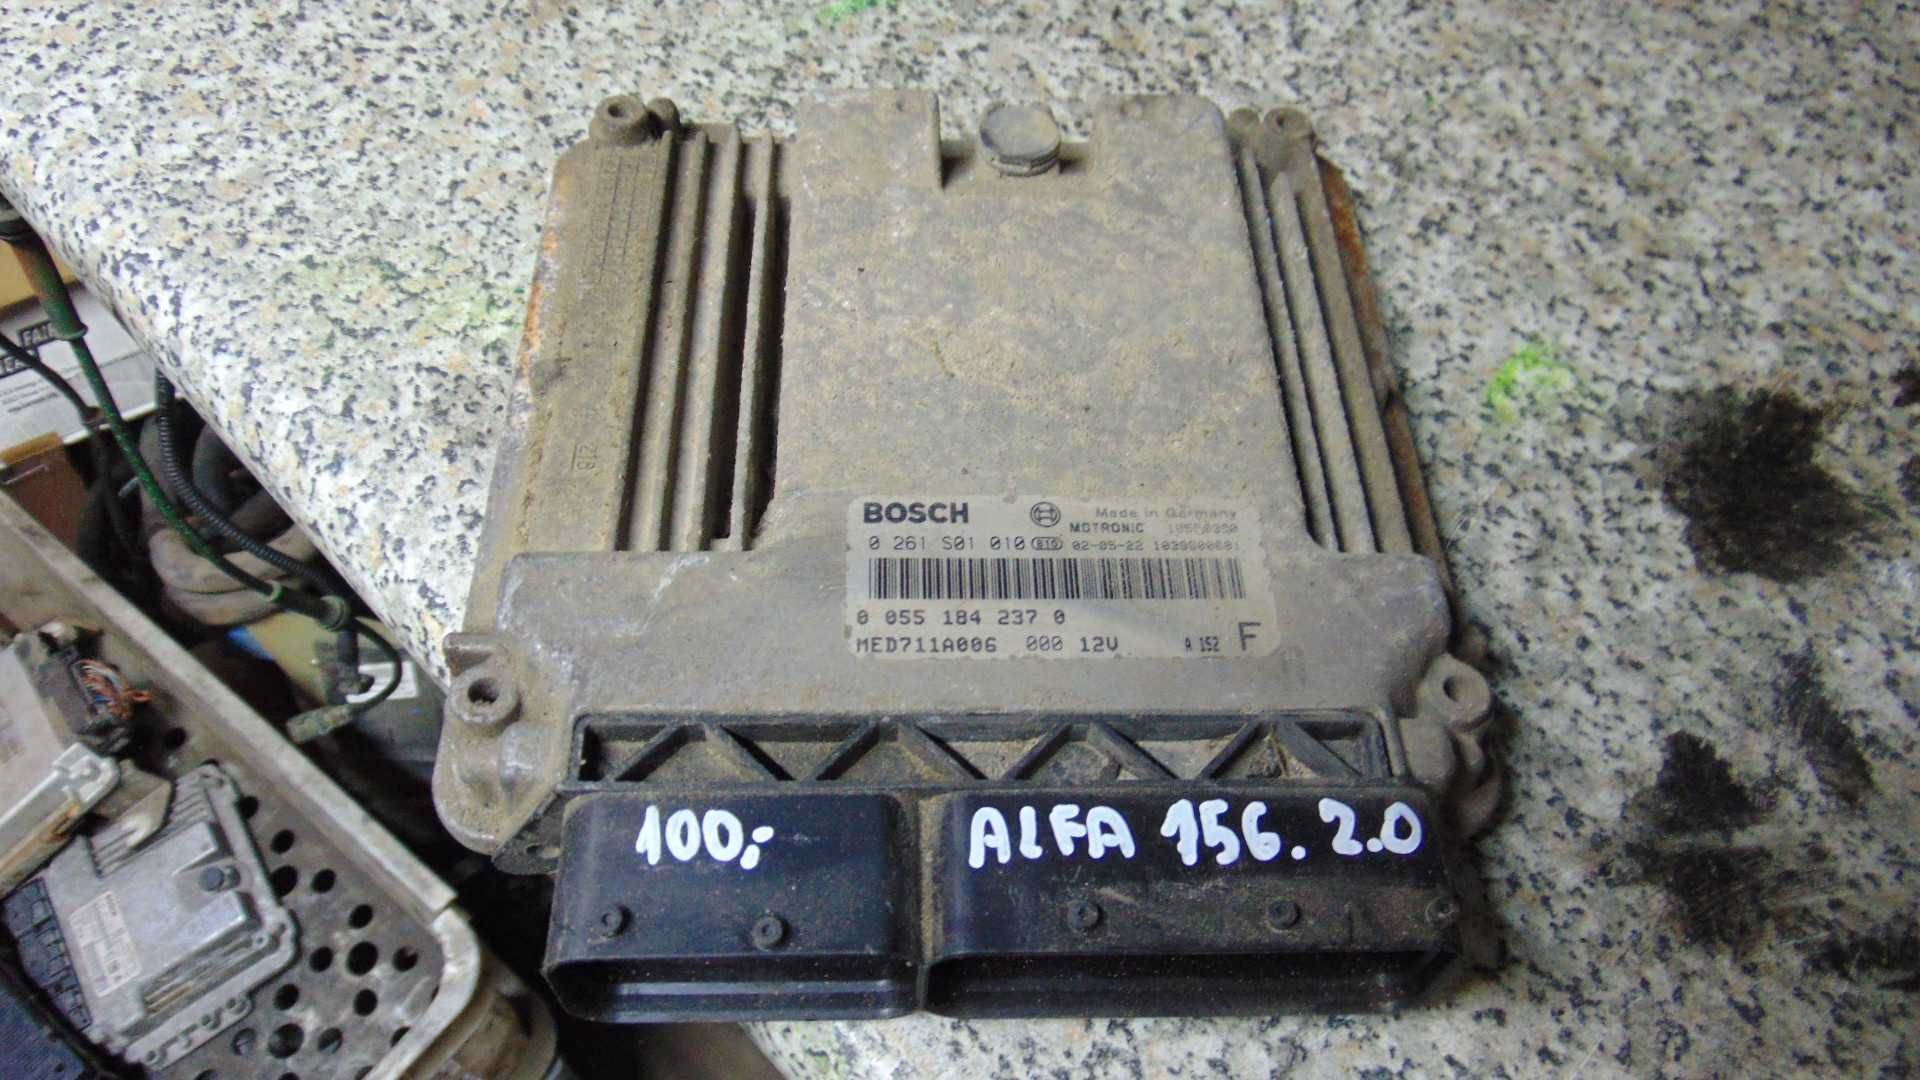 Lut4 Sterownik silnika komputer alfa romeo 156 2.0 wysyłka części